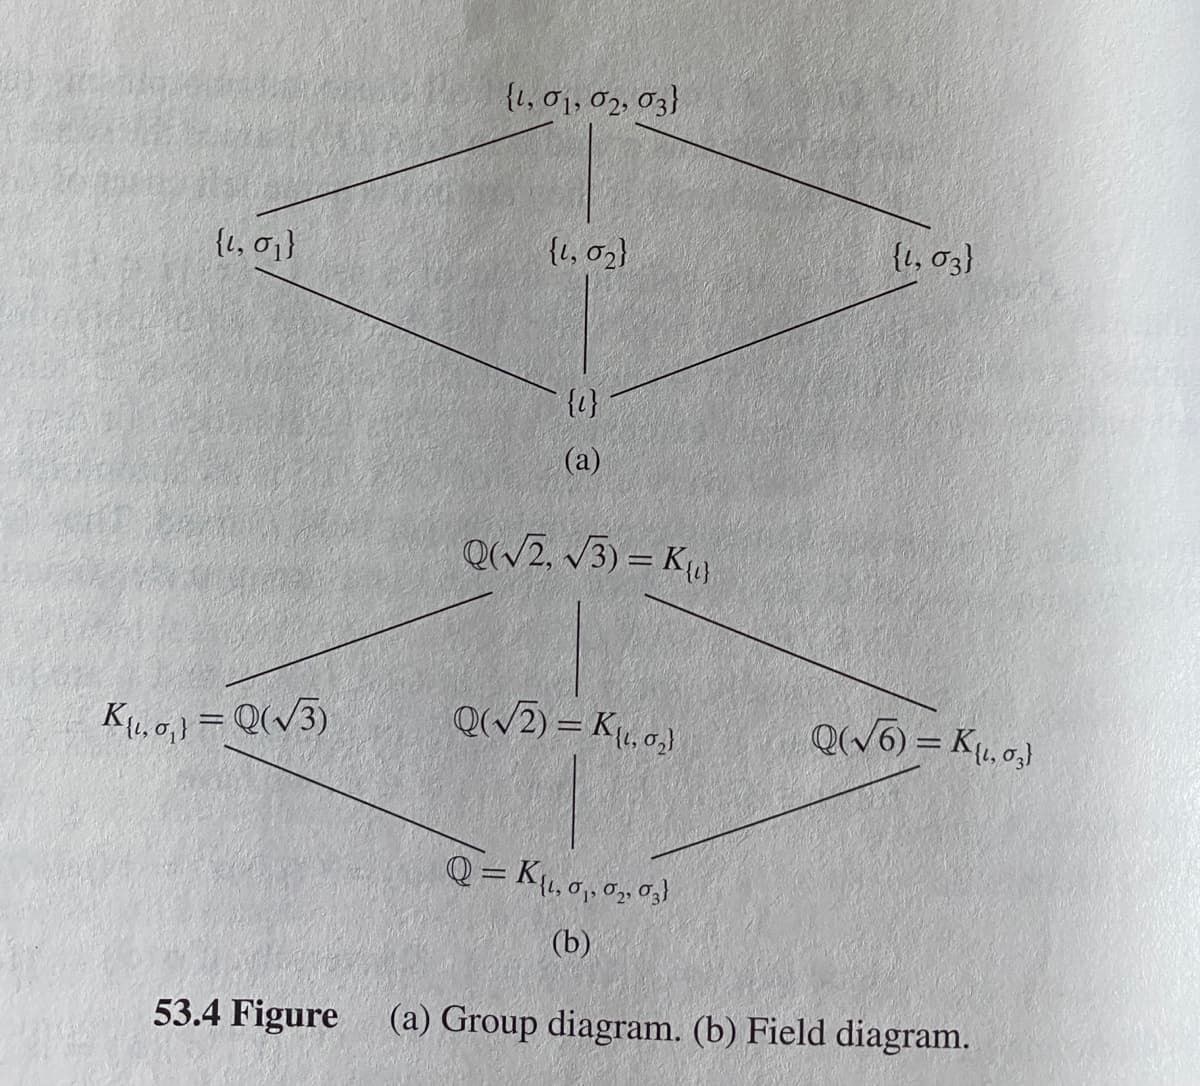 {1,01, 02, 03}
{1, 01}
{1, 02}
{t, 03)
{1}
(а)
Q(/2, v3) = K}
K.a,) = Q(/3)
Q(/2) = K, a,)
Q(W6) = K, 0,)
%3|
Q= K, 0, 0, 03)
(b)
53.4 Figure
(a) Group diagram. (b) Field diagram.
